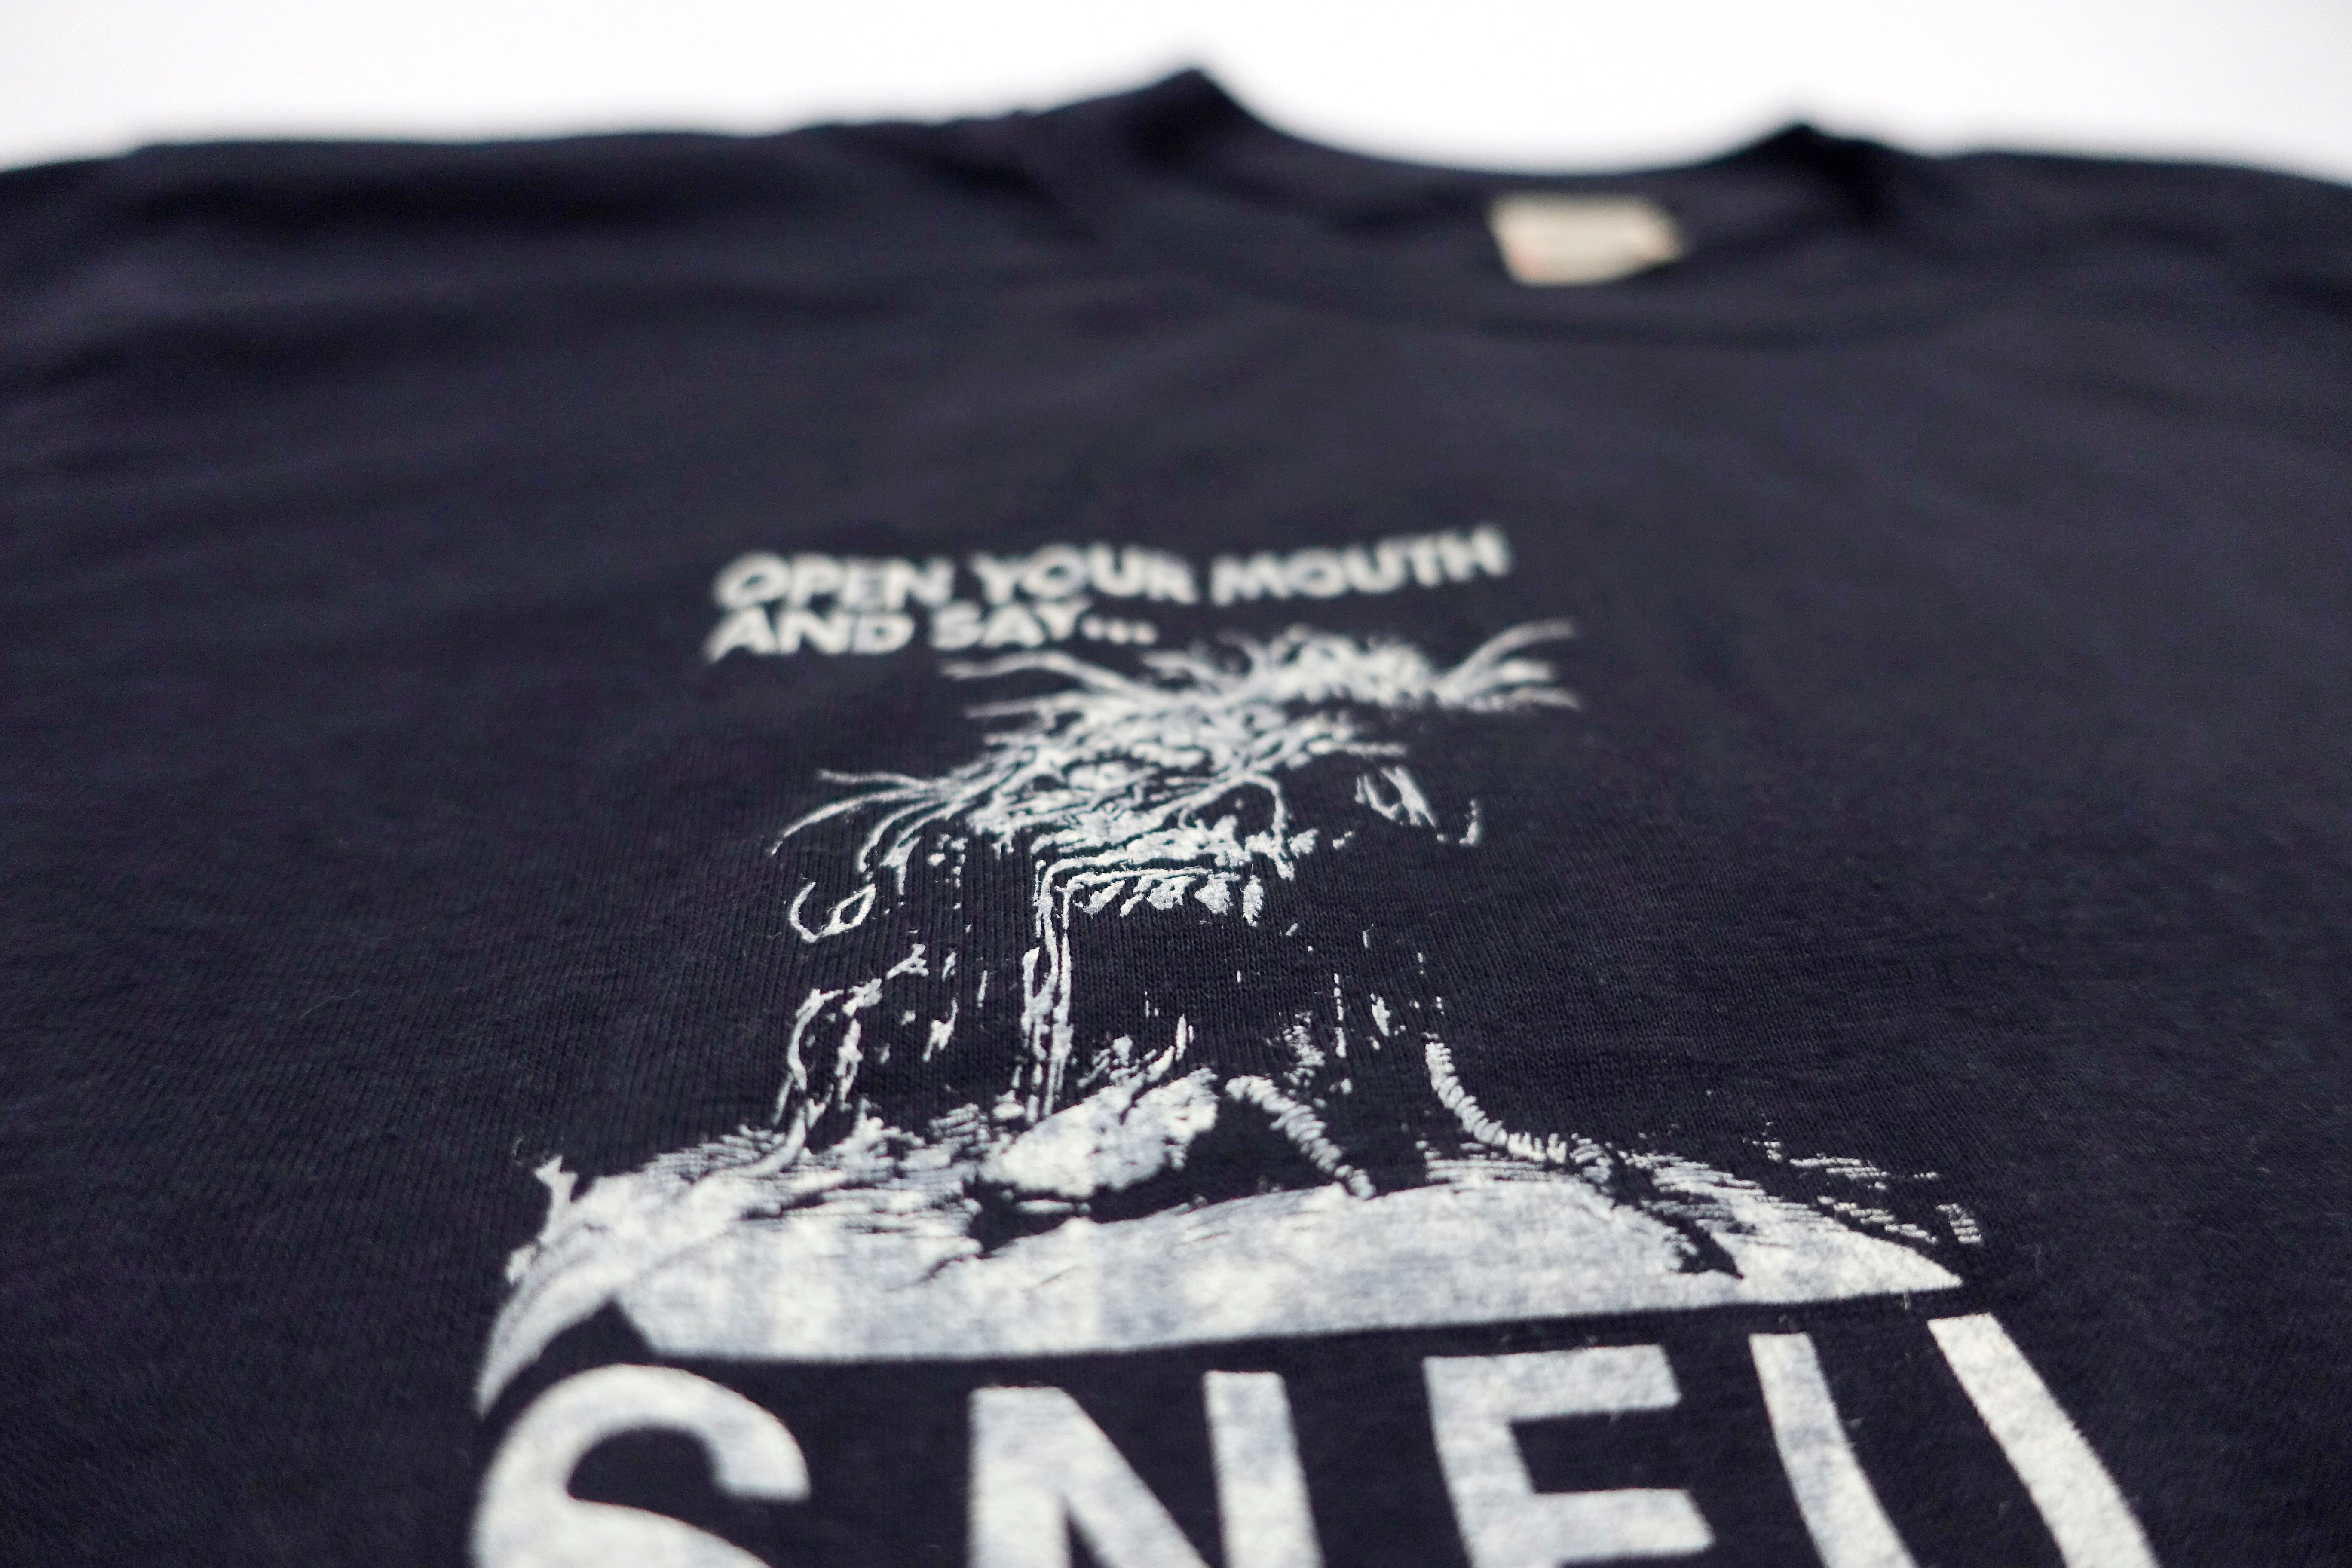 SNFU - Fish Lettering Right Pocket Print Tour Shirt Size Large